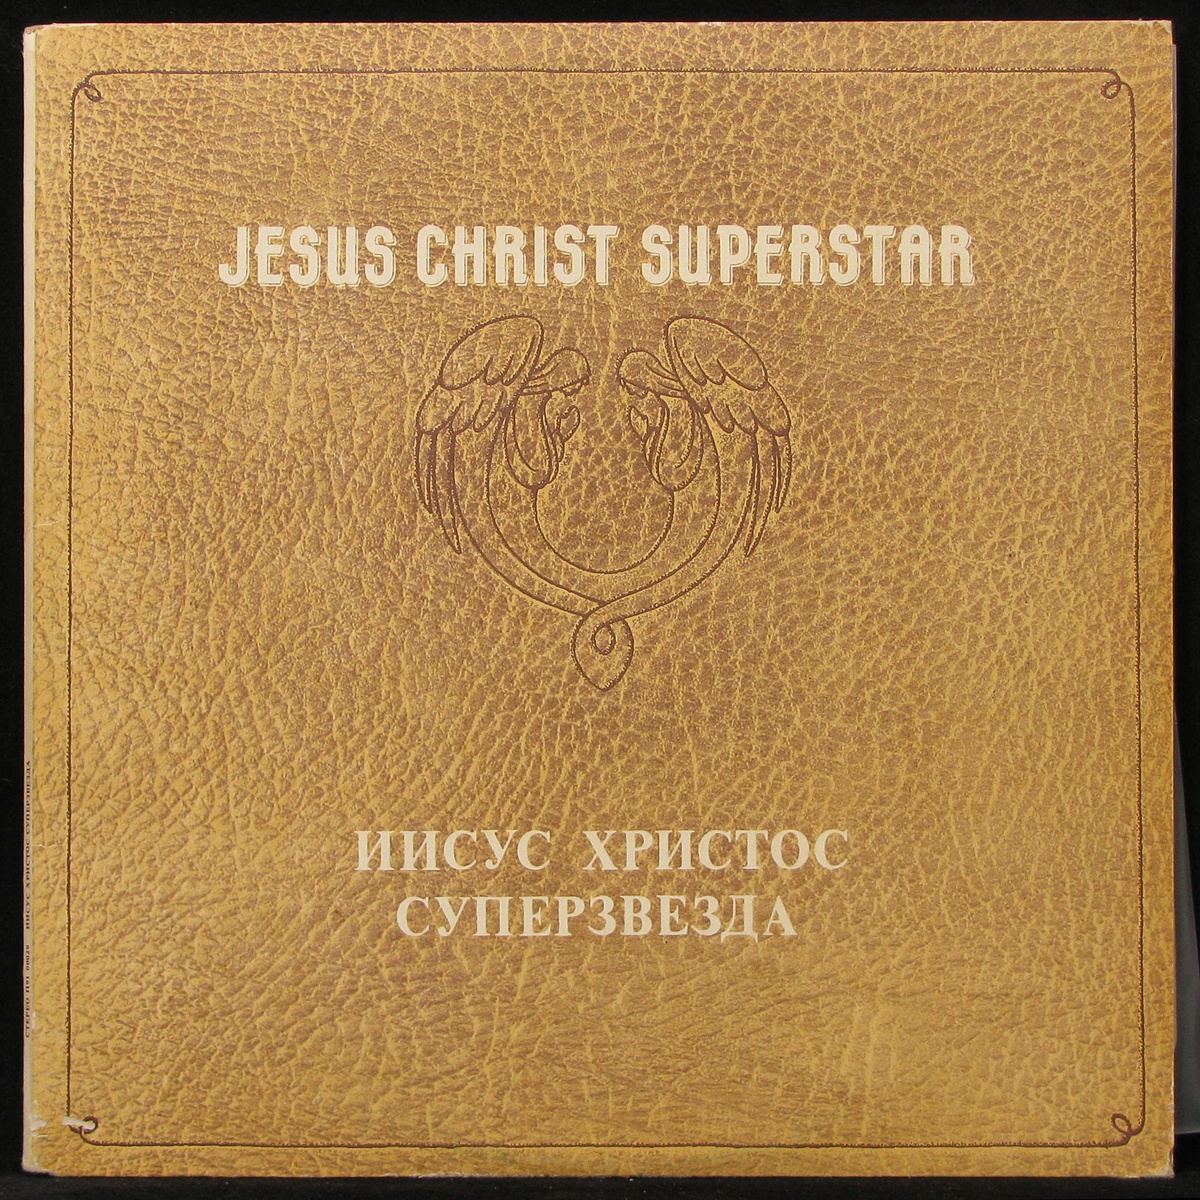 LP Jesus Christ Superstar — Jesus Christ Superstar (2LP) фото